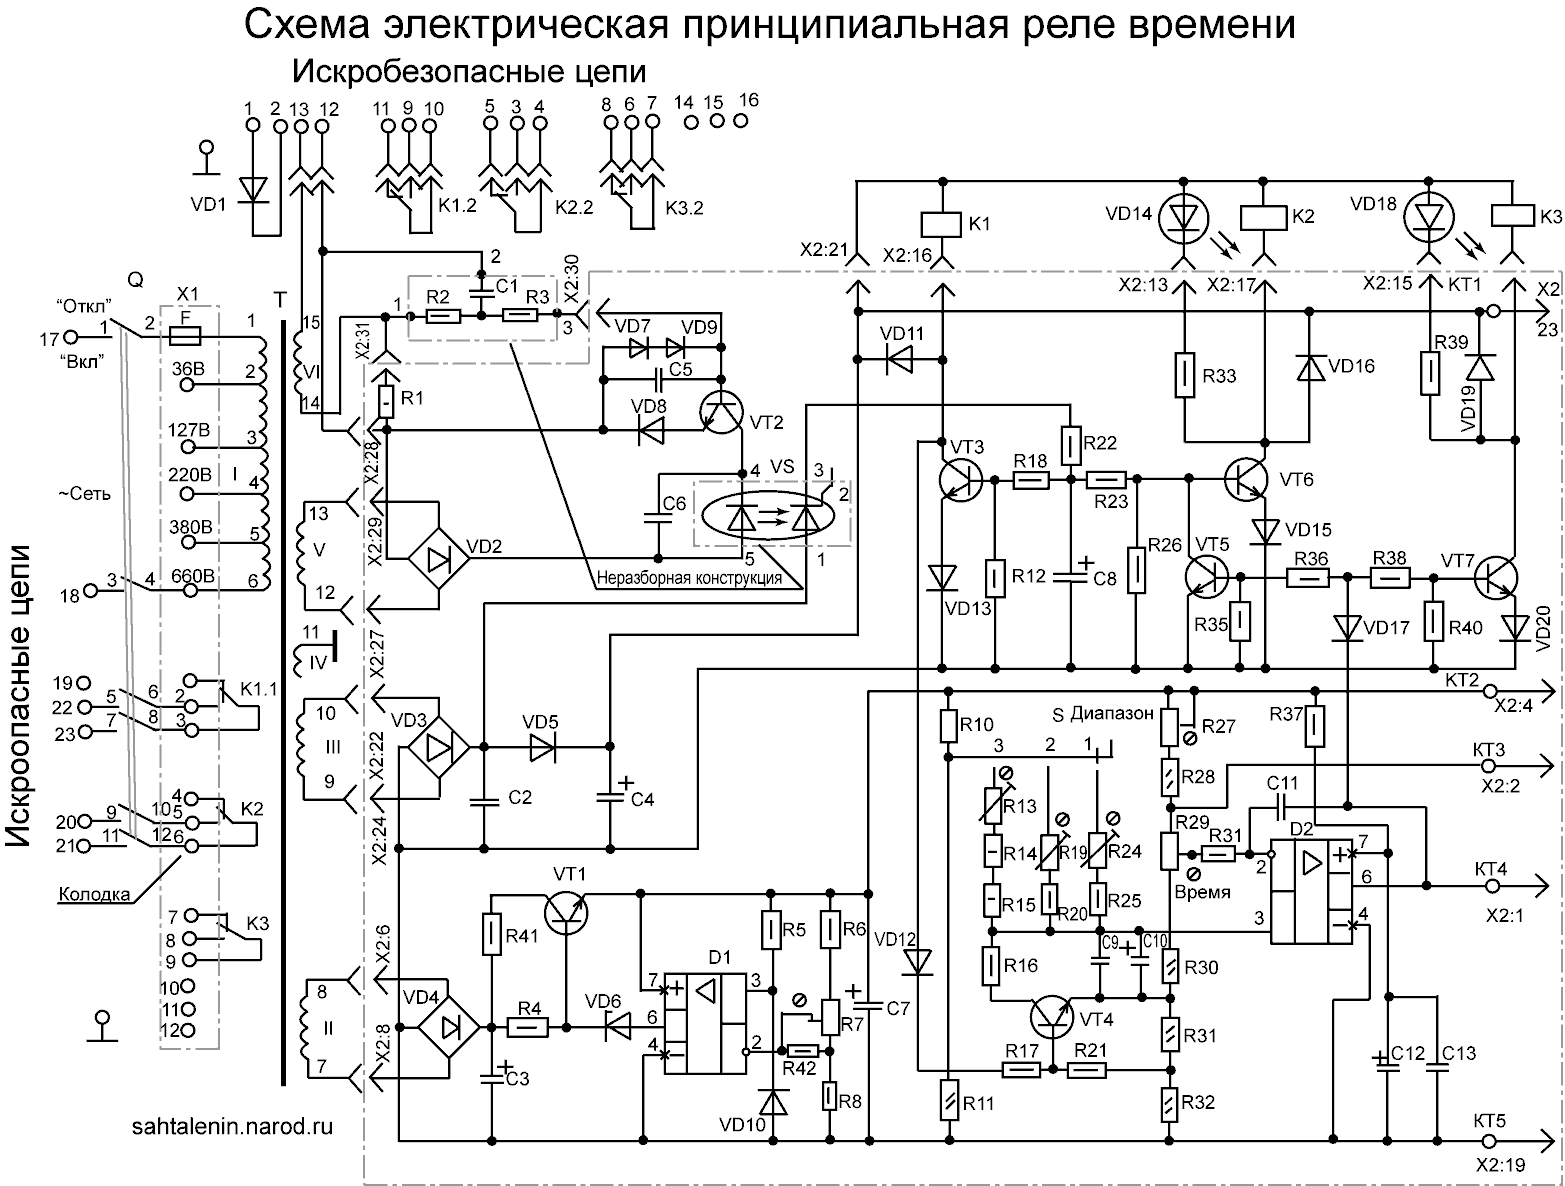 Схема электрическая принципиальная РВИ-1М